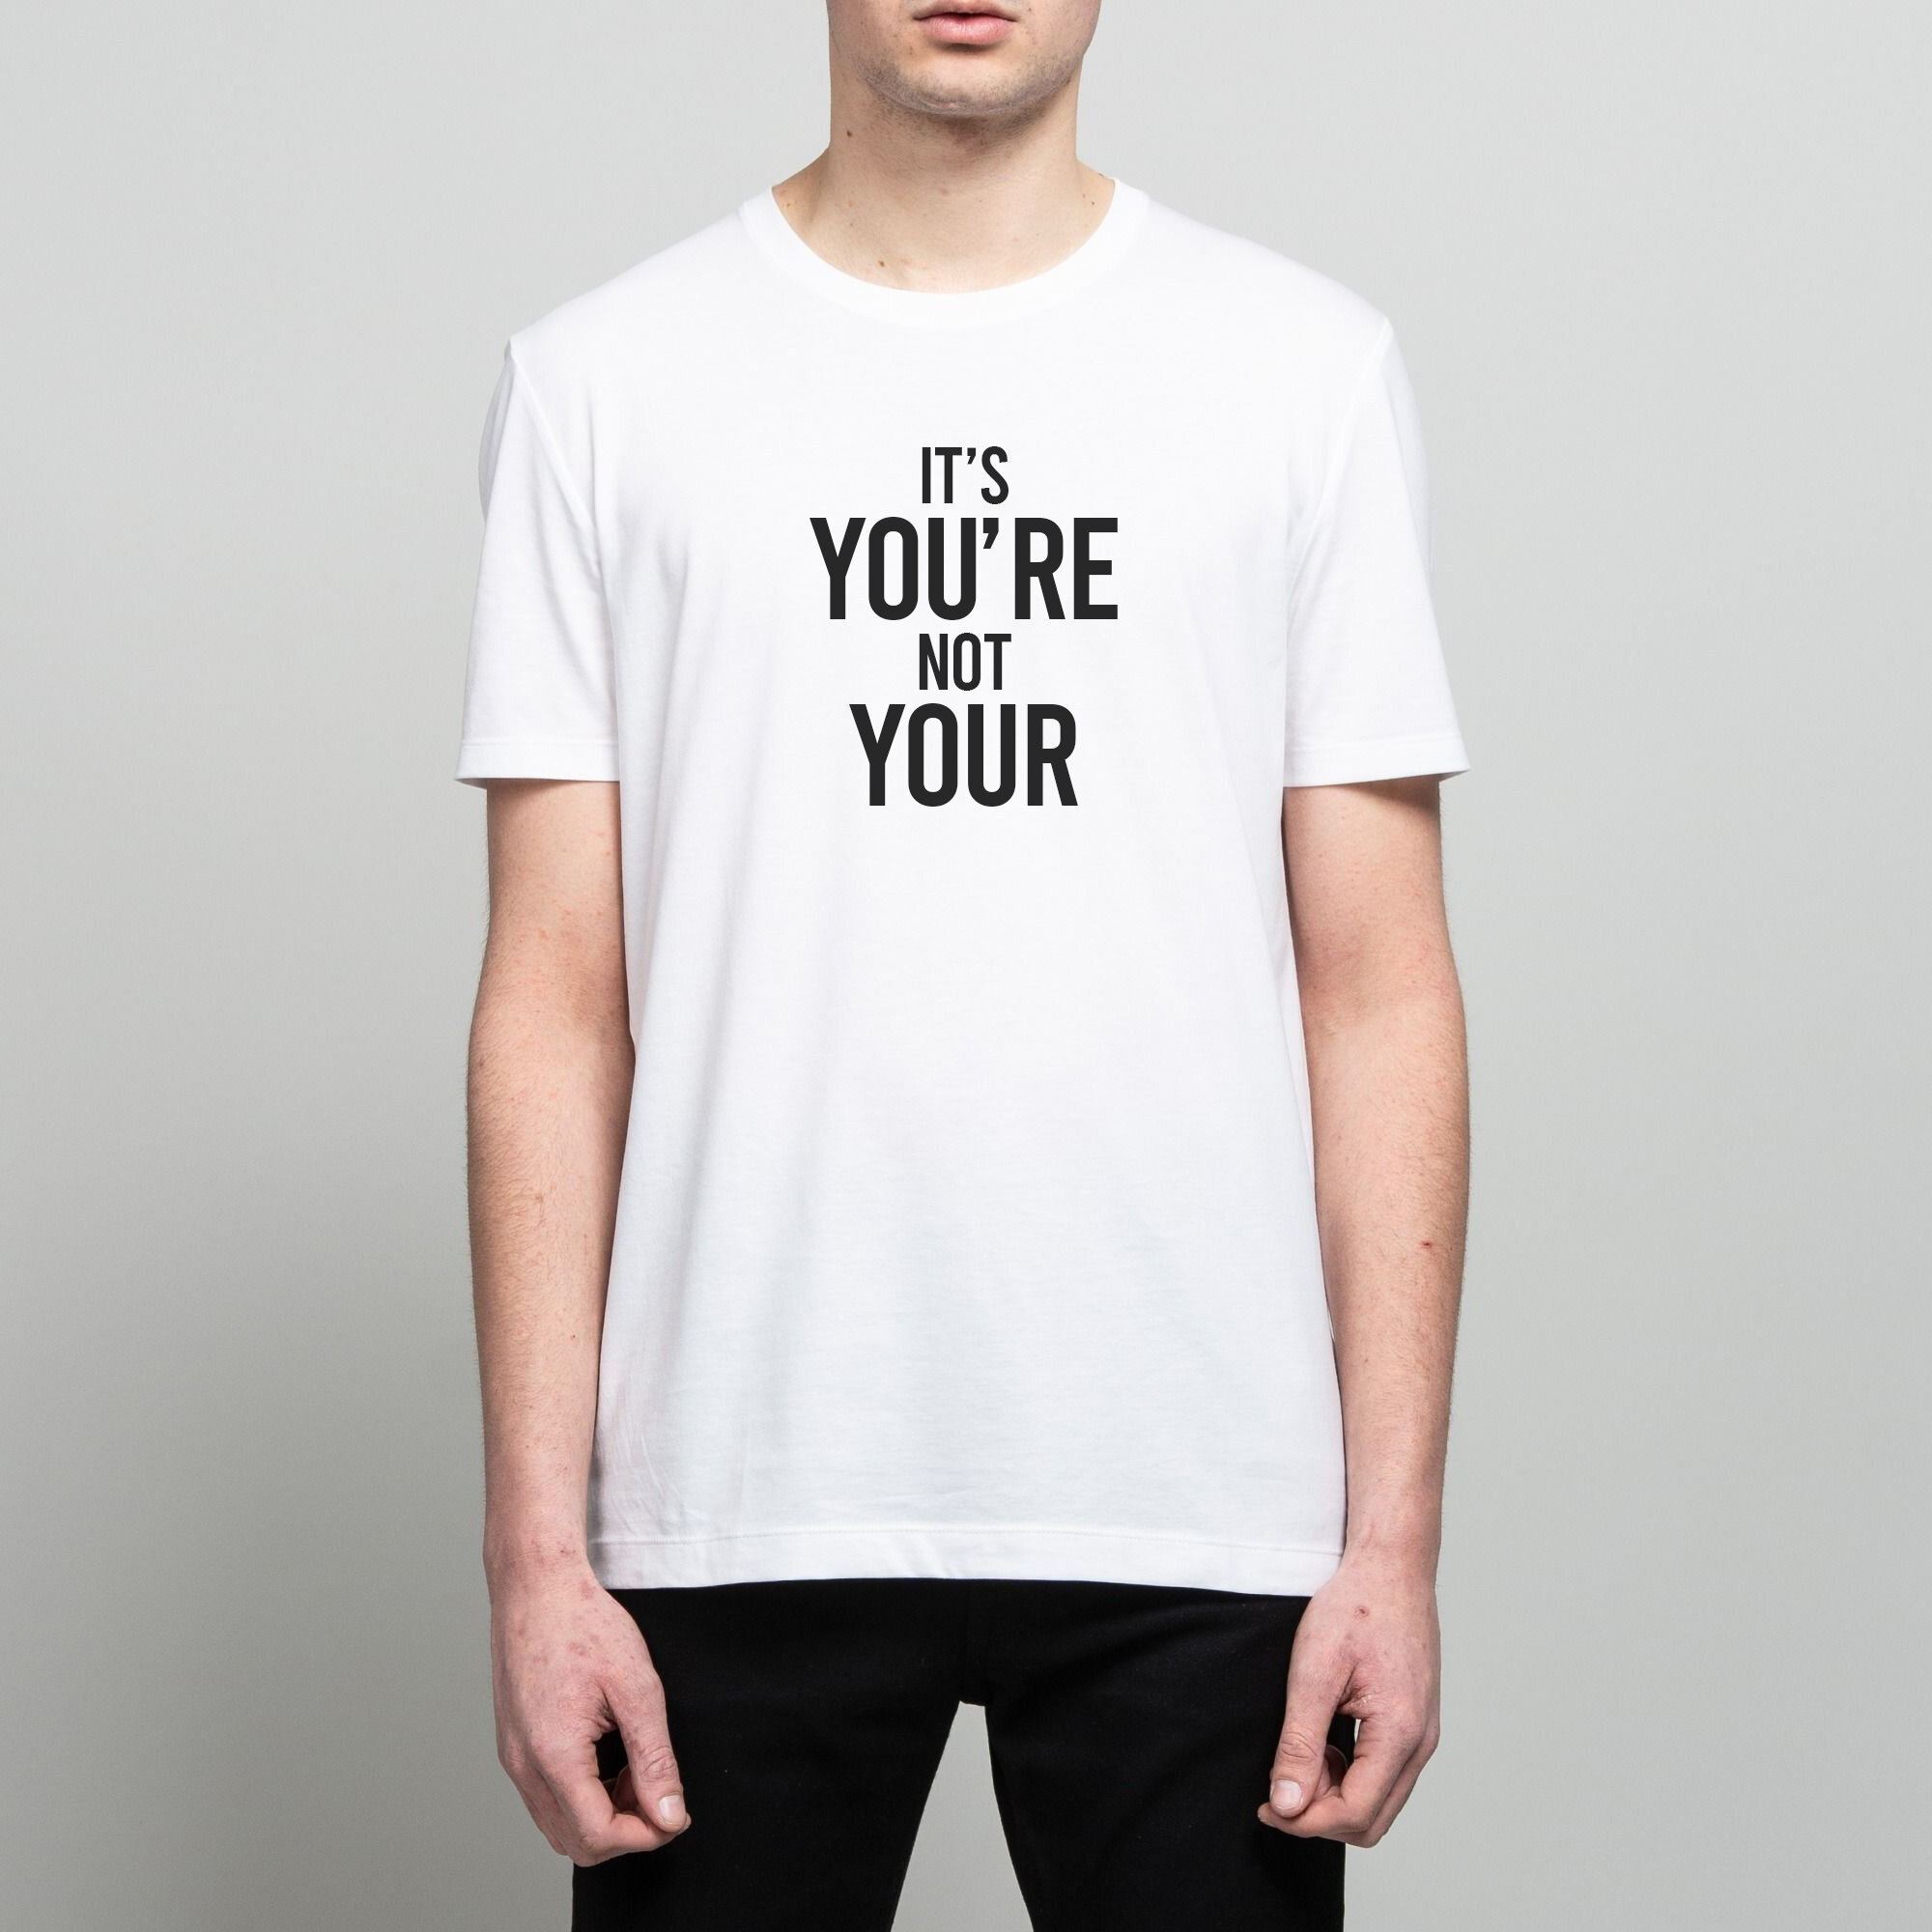 Tshirt-You're.jpg